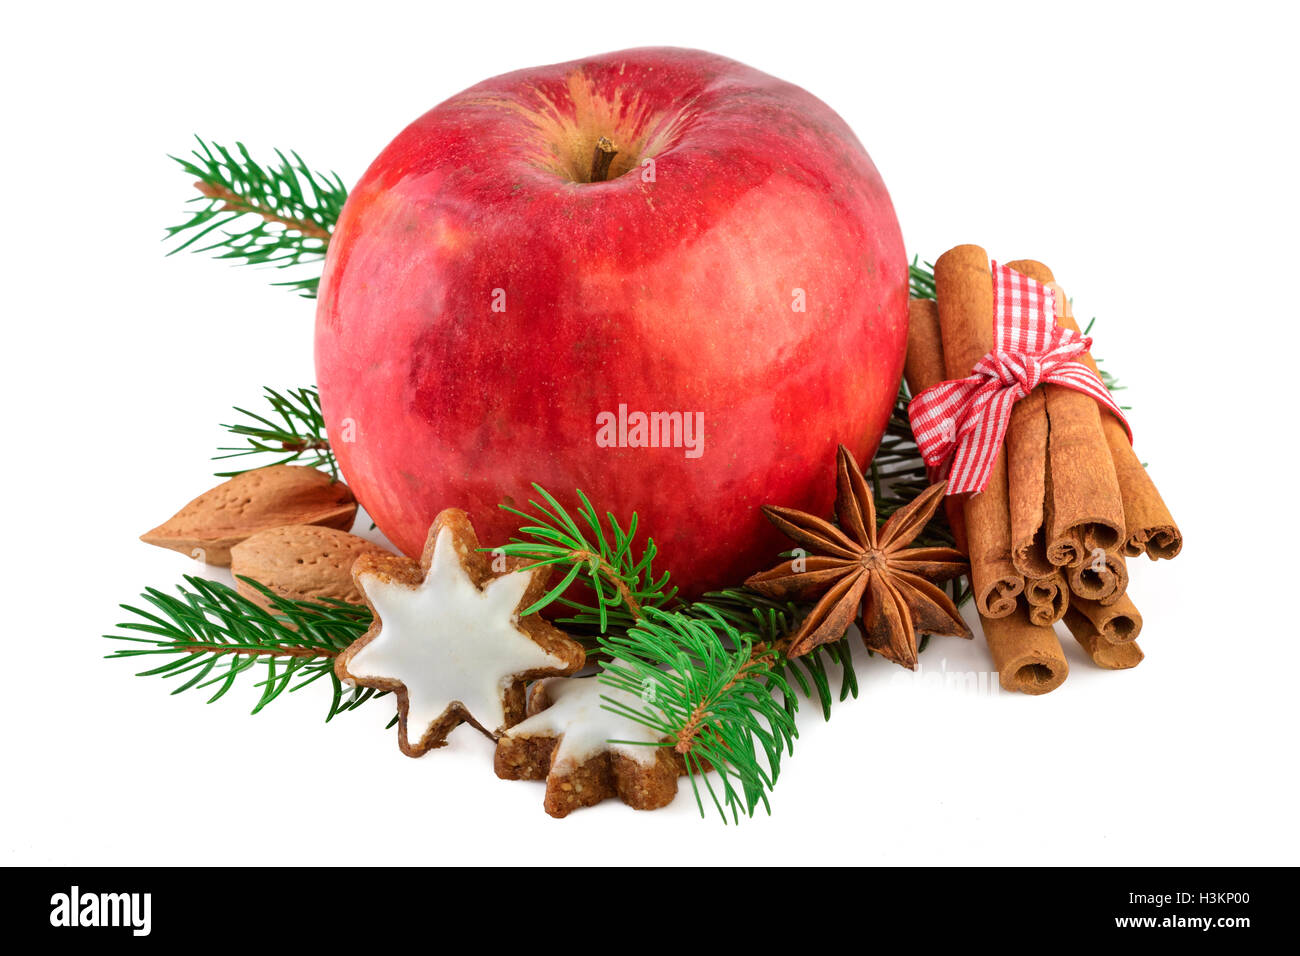 Mela Rossa decorazione di Natale casale rustico stile ancora in vita. Natale apple con spezie su sfondo bianco. Foto Stock